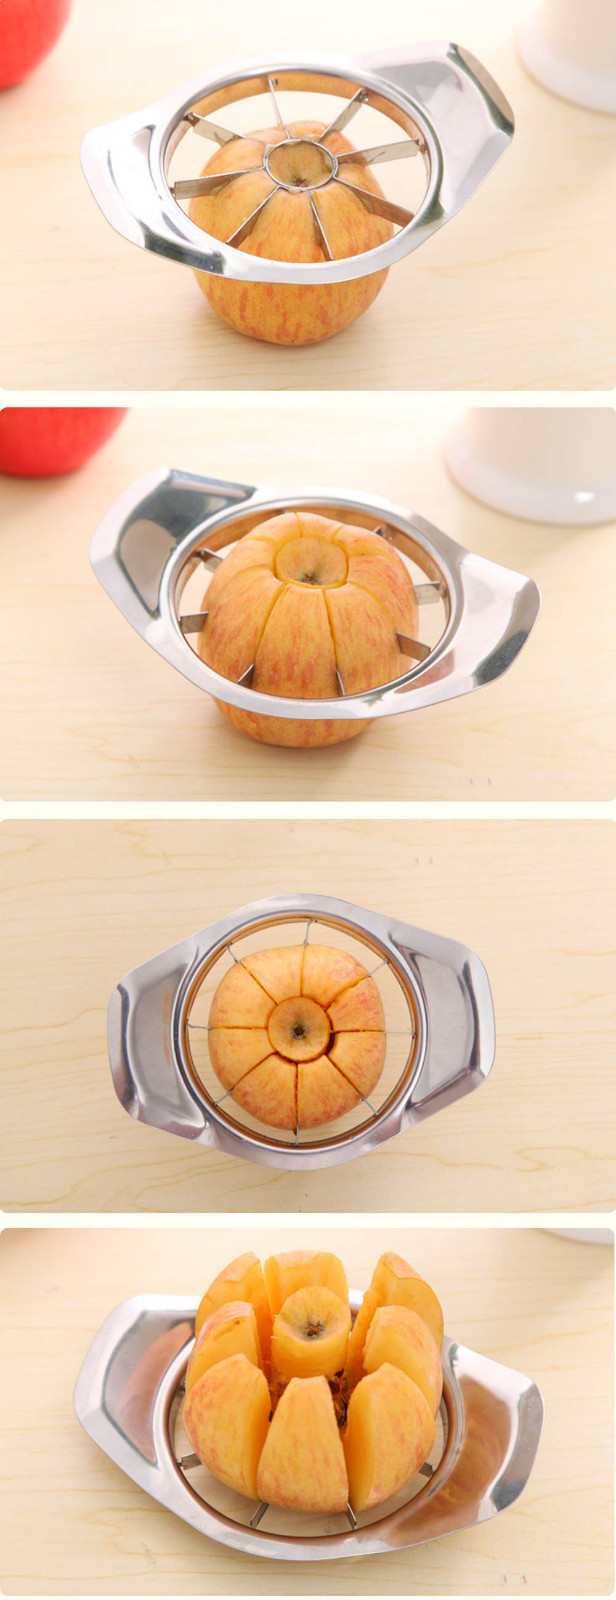 Gekwalificeerde Rvs Fruit Appel Peer Cut Slicer Cutter Divider Dunschiller apple cutter OC18